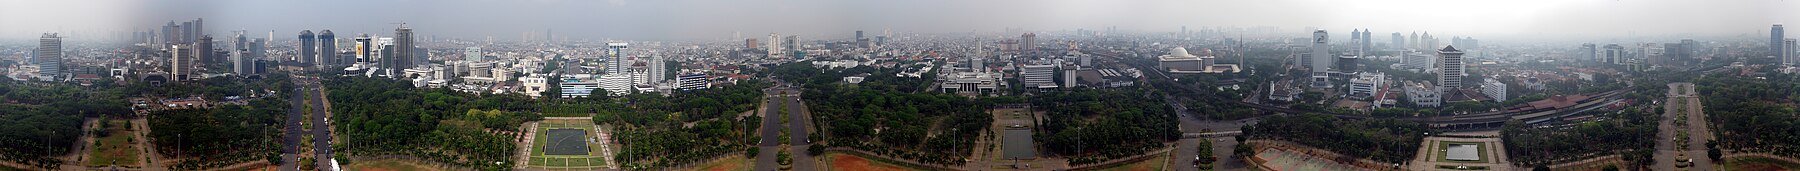 Panorama Jakarta, Indonesia.